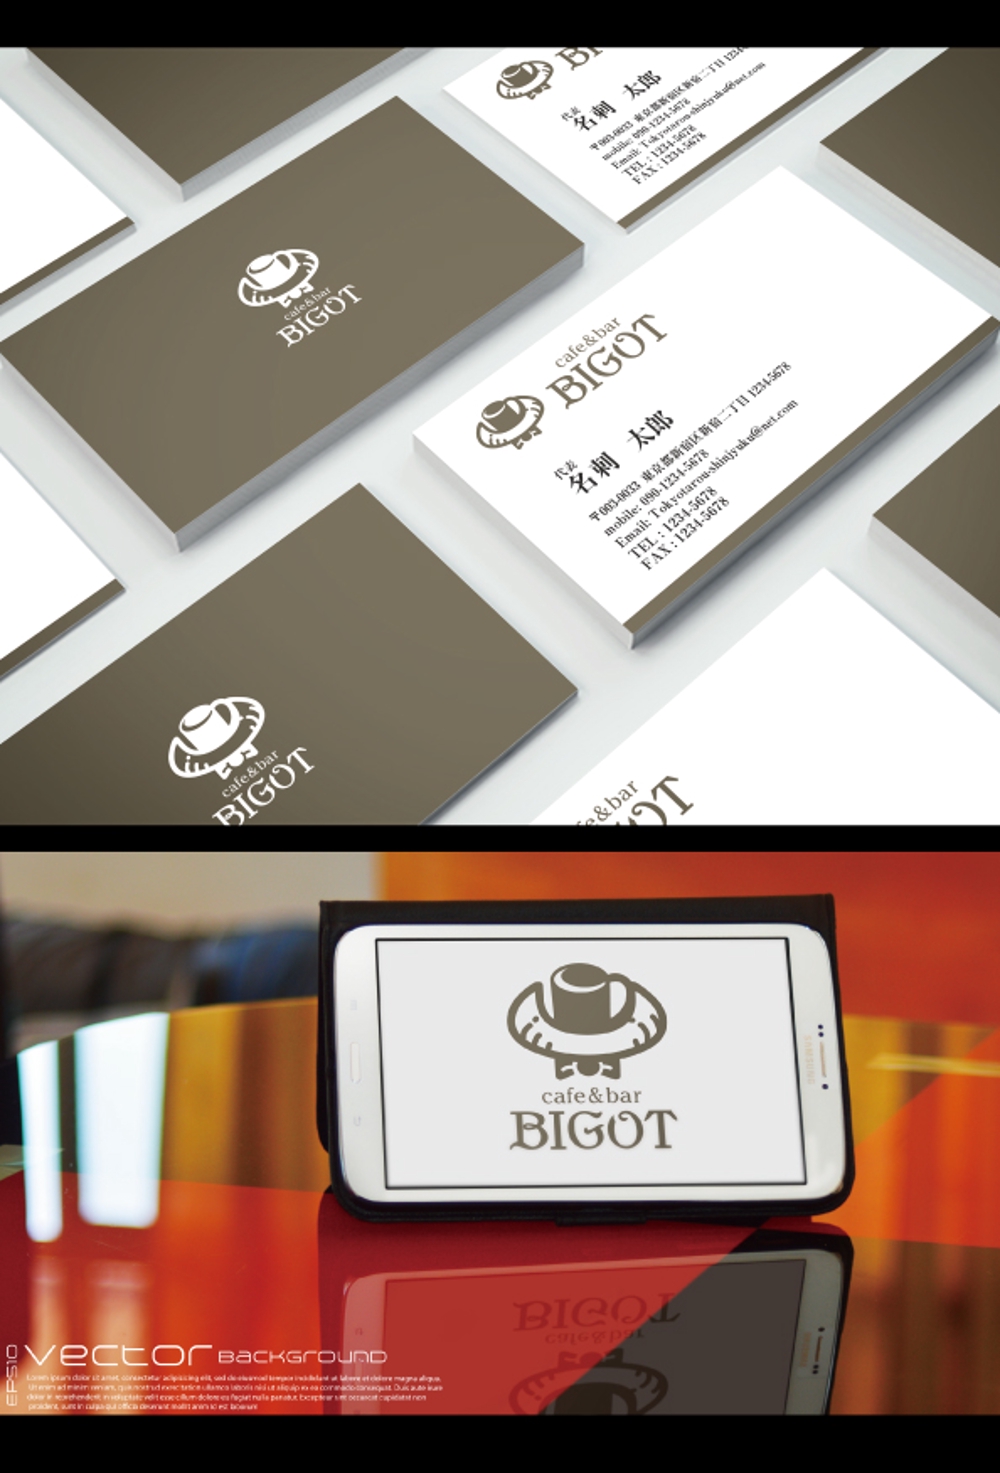 飲食店（cafe、bar)のロゴ作成「BIGOT」の文字を入れて